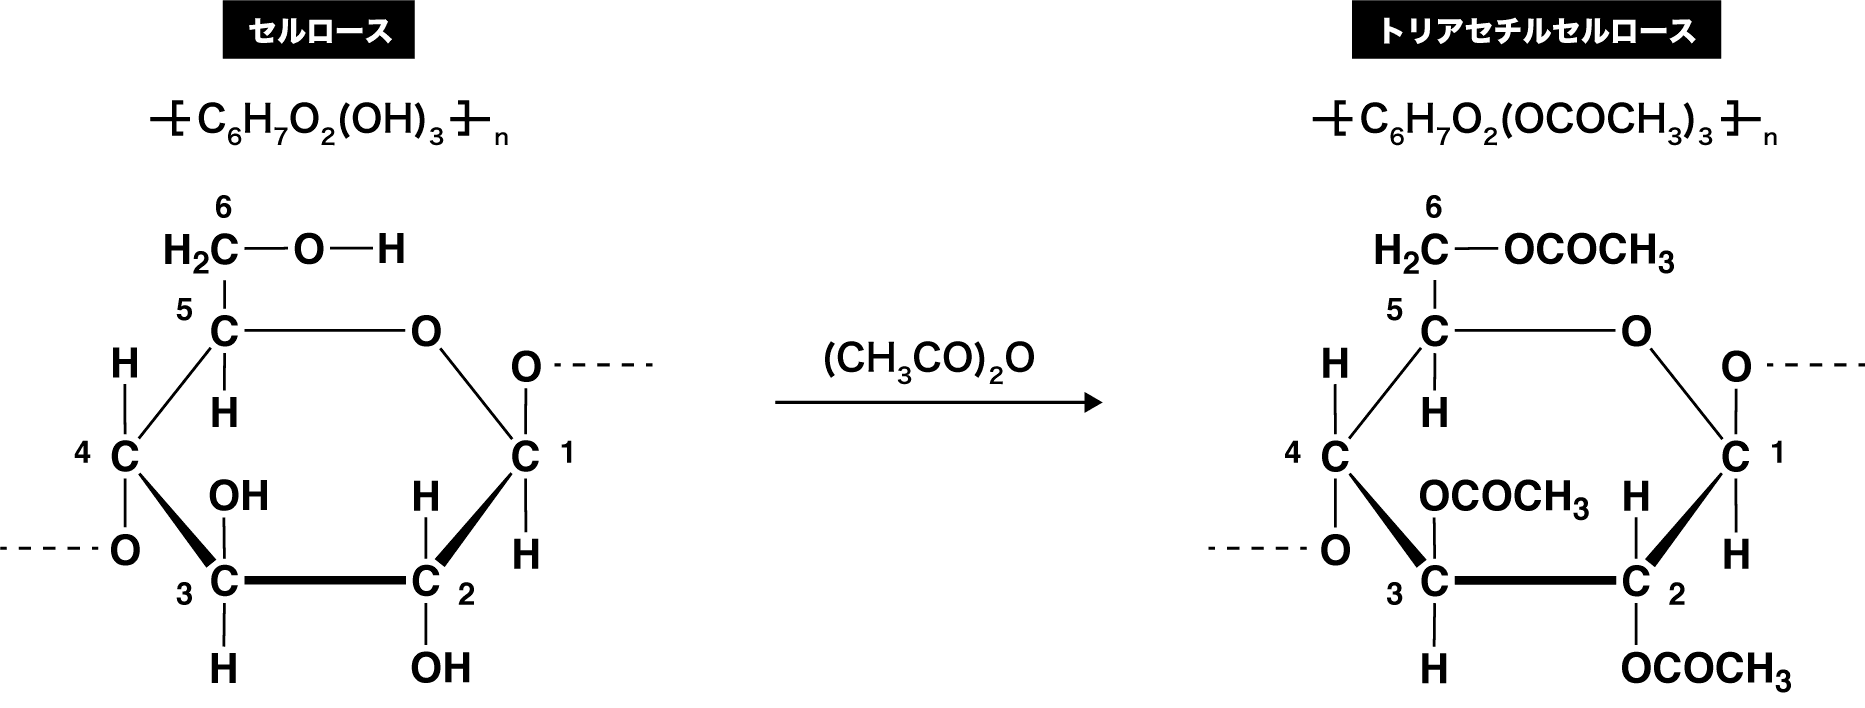 ニトロセルロースとアセチルセルロース 合成法 作り方や構造 用途など 化学のグルメ